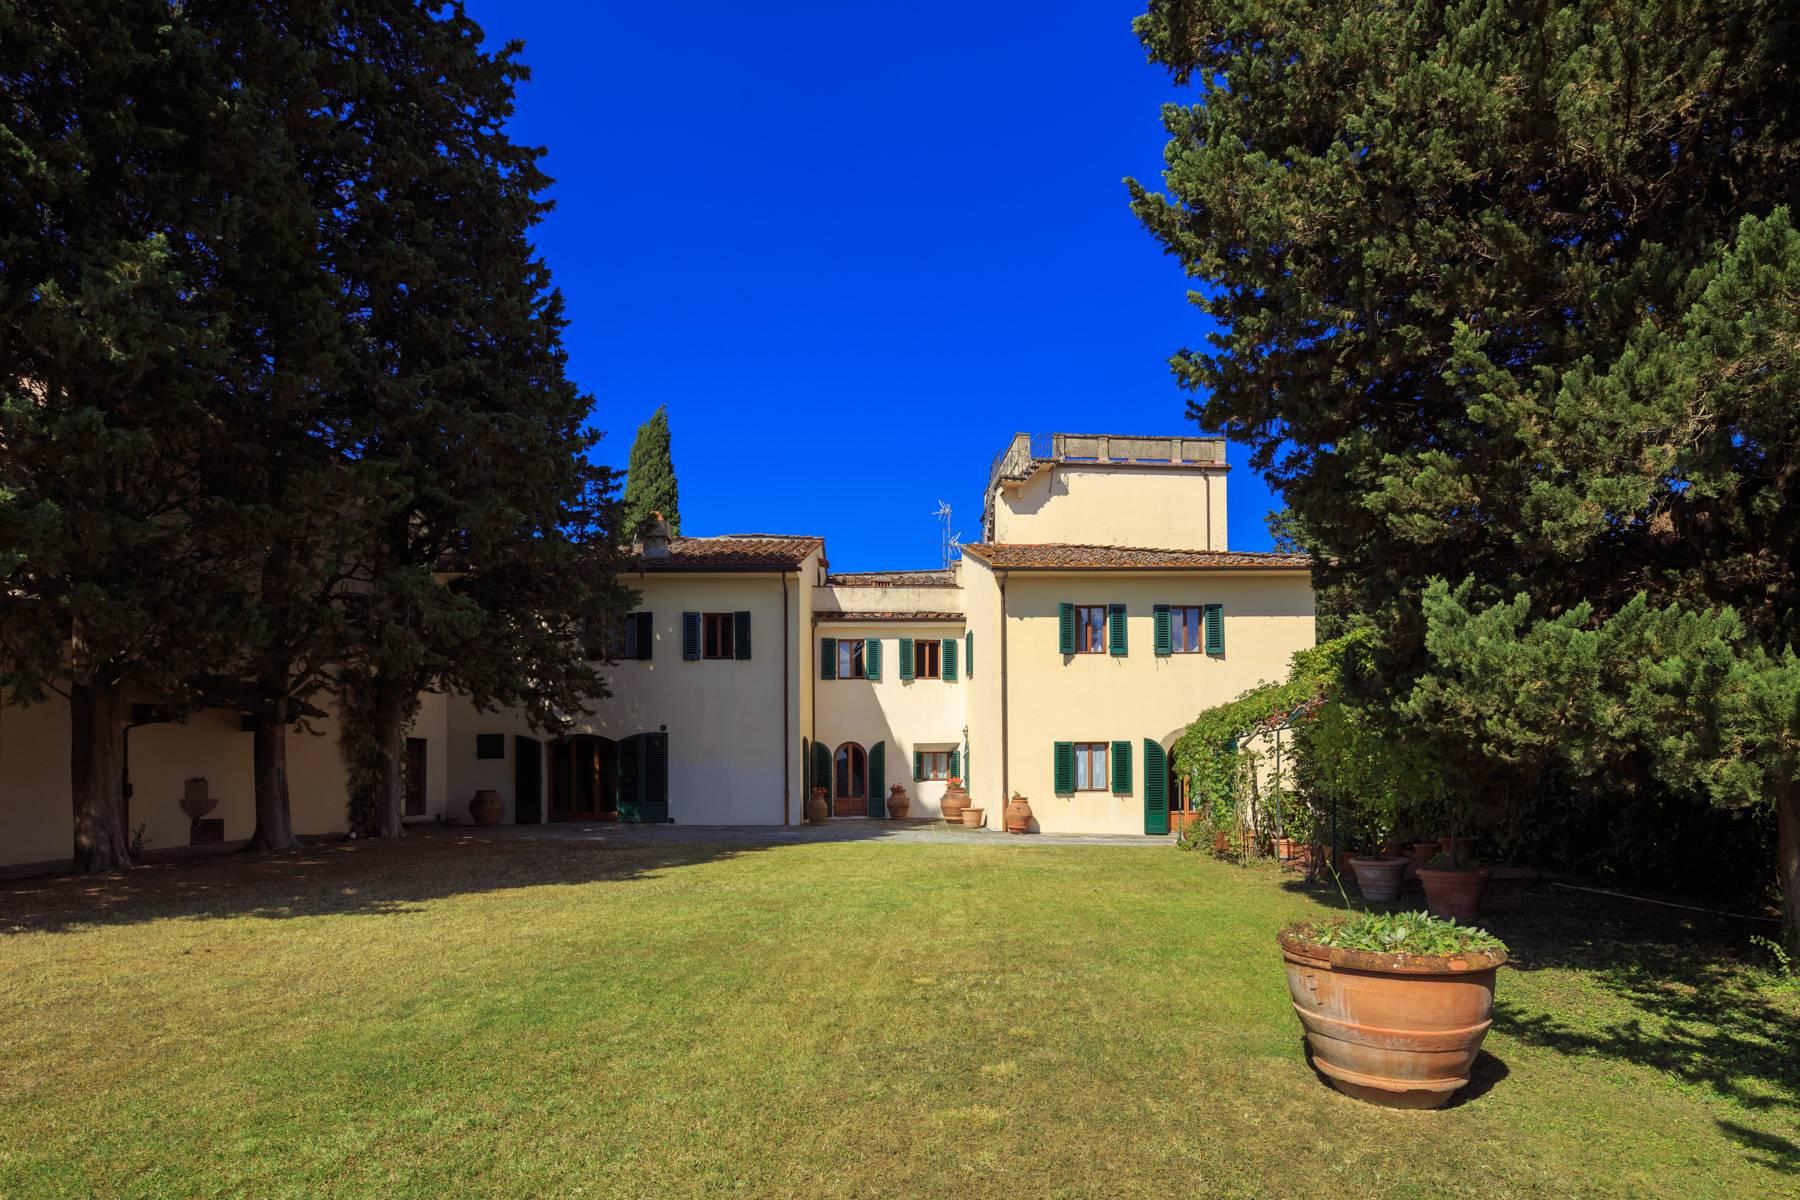 Grande villa antica con oliveto a 10 minuti da Firenze - 2